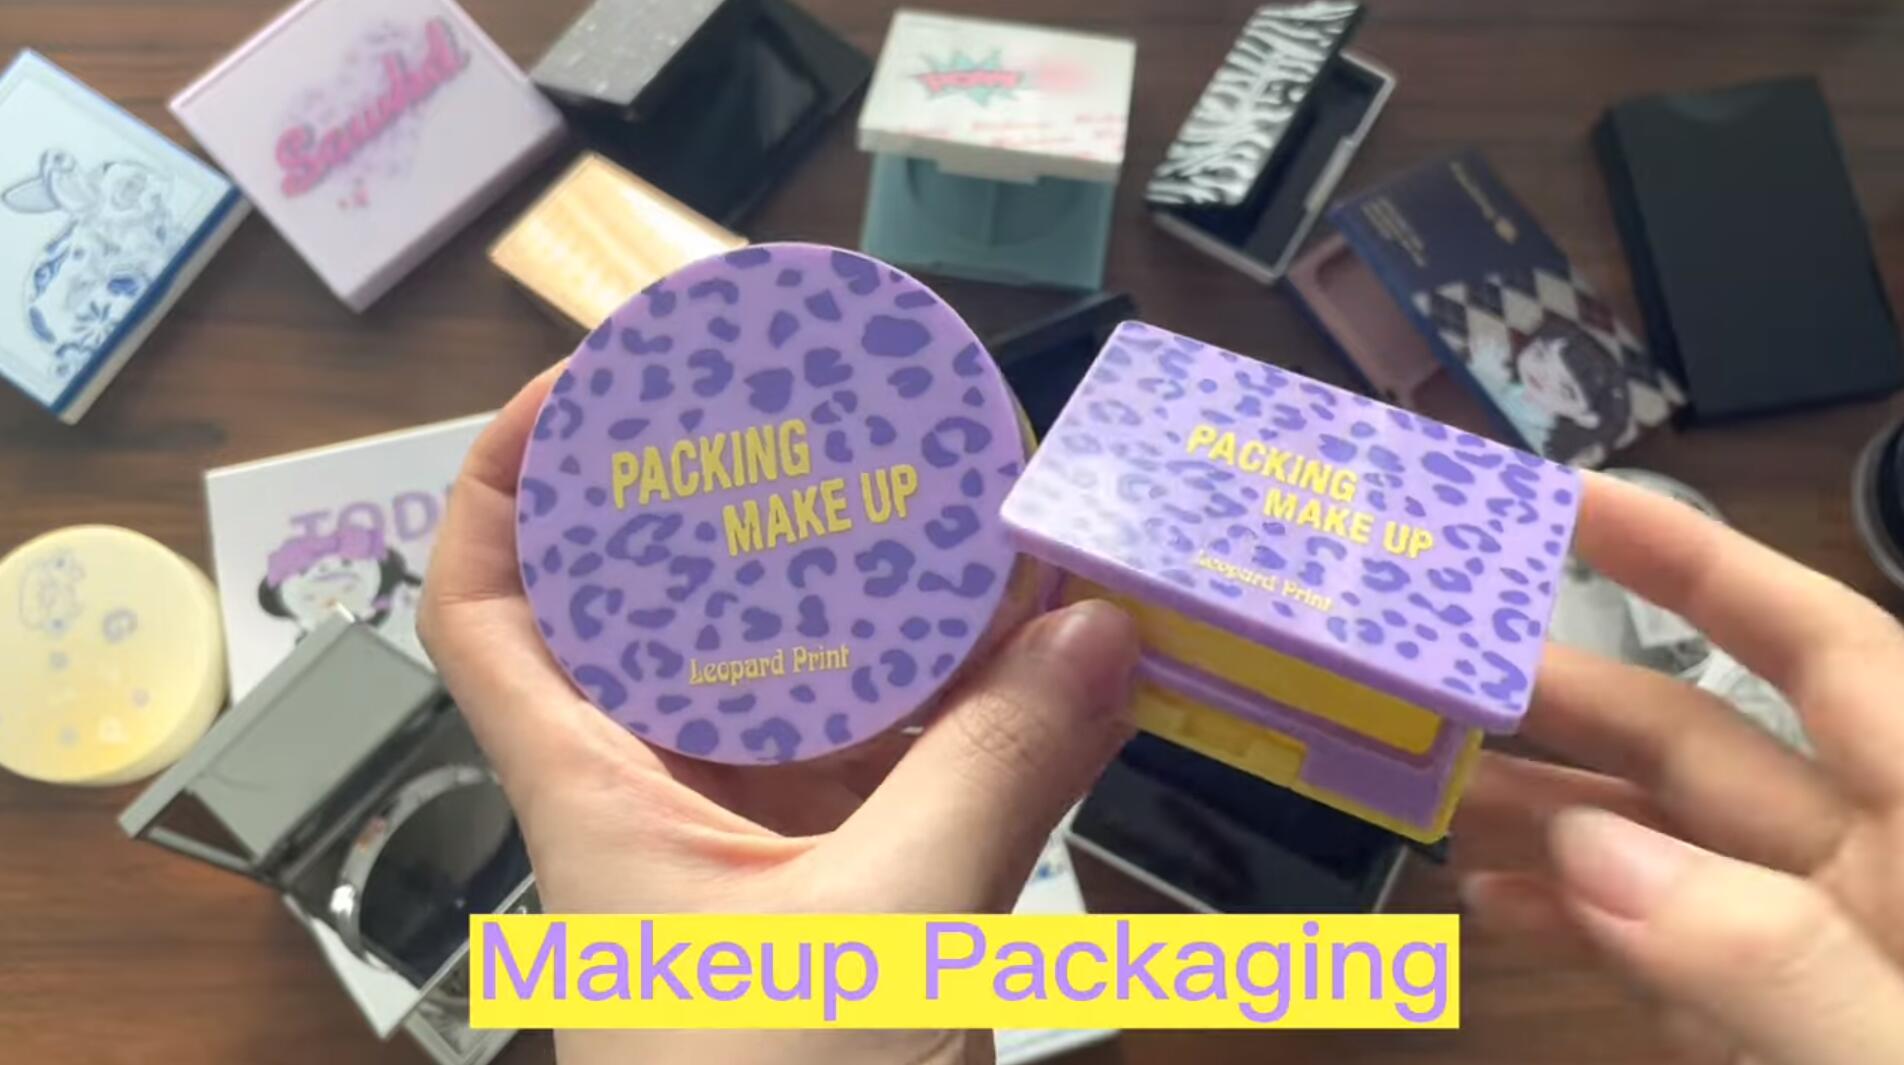 Makeup Packaging Series.jpg